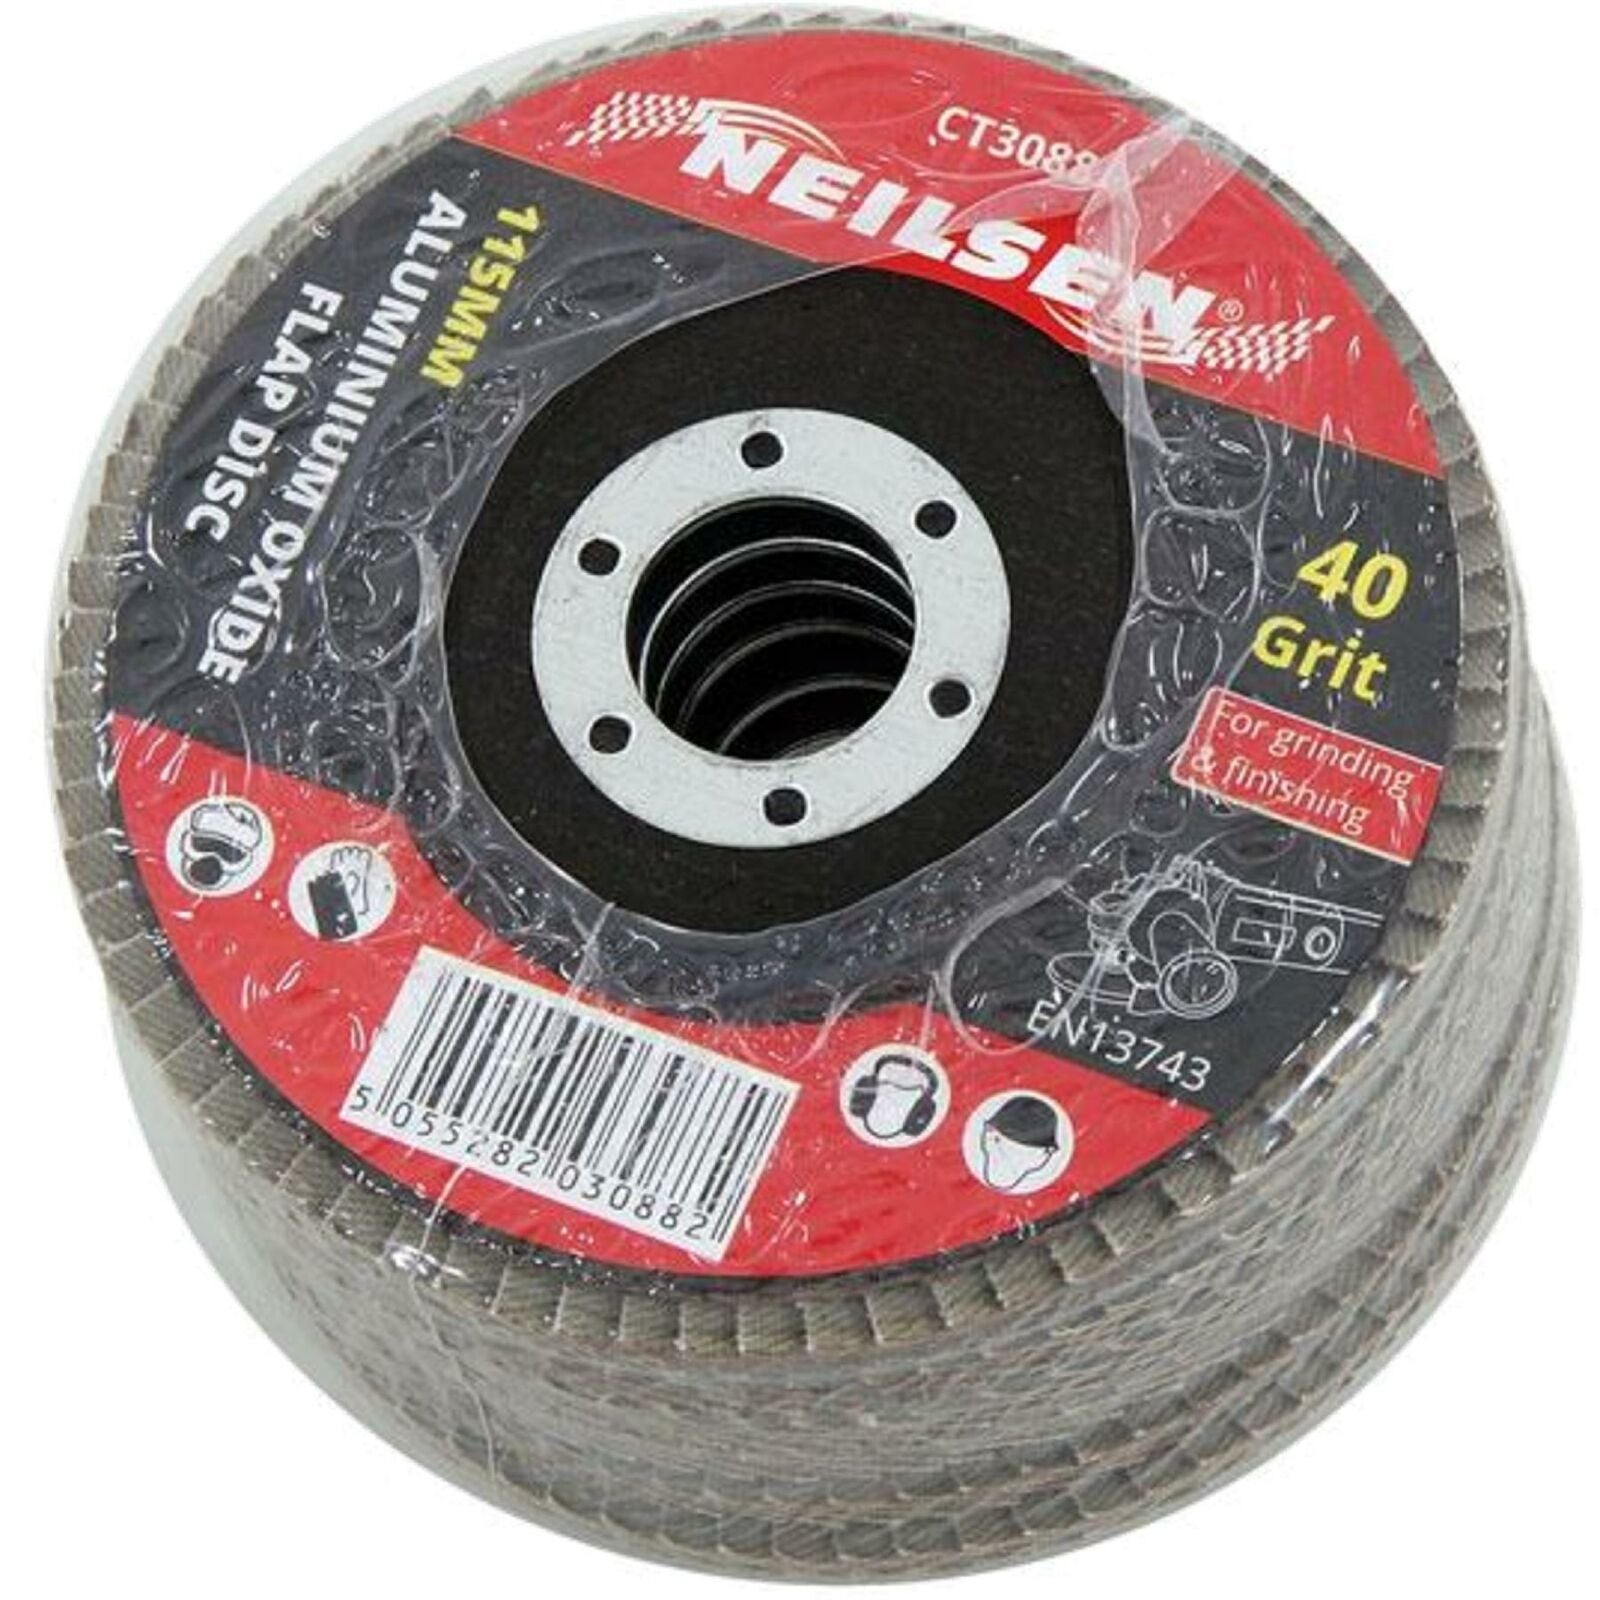 Neilsen 6pc Sanding Aluminium Oxide Flap Disc Set Angle Grinder 40 60 80 Grit